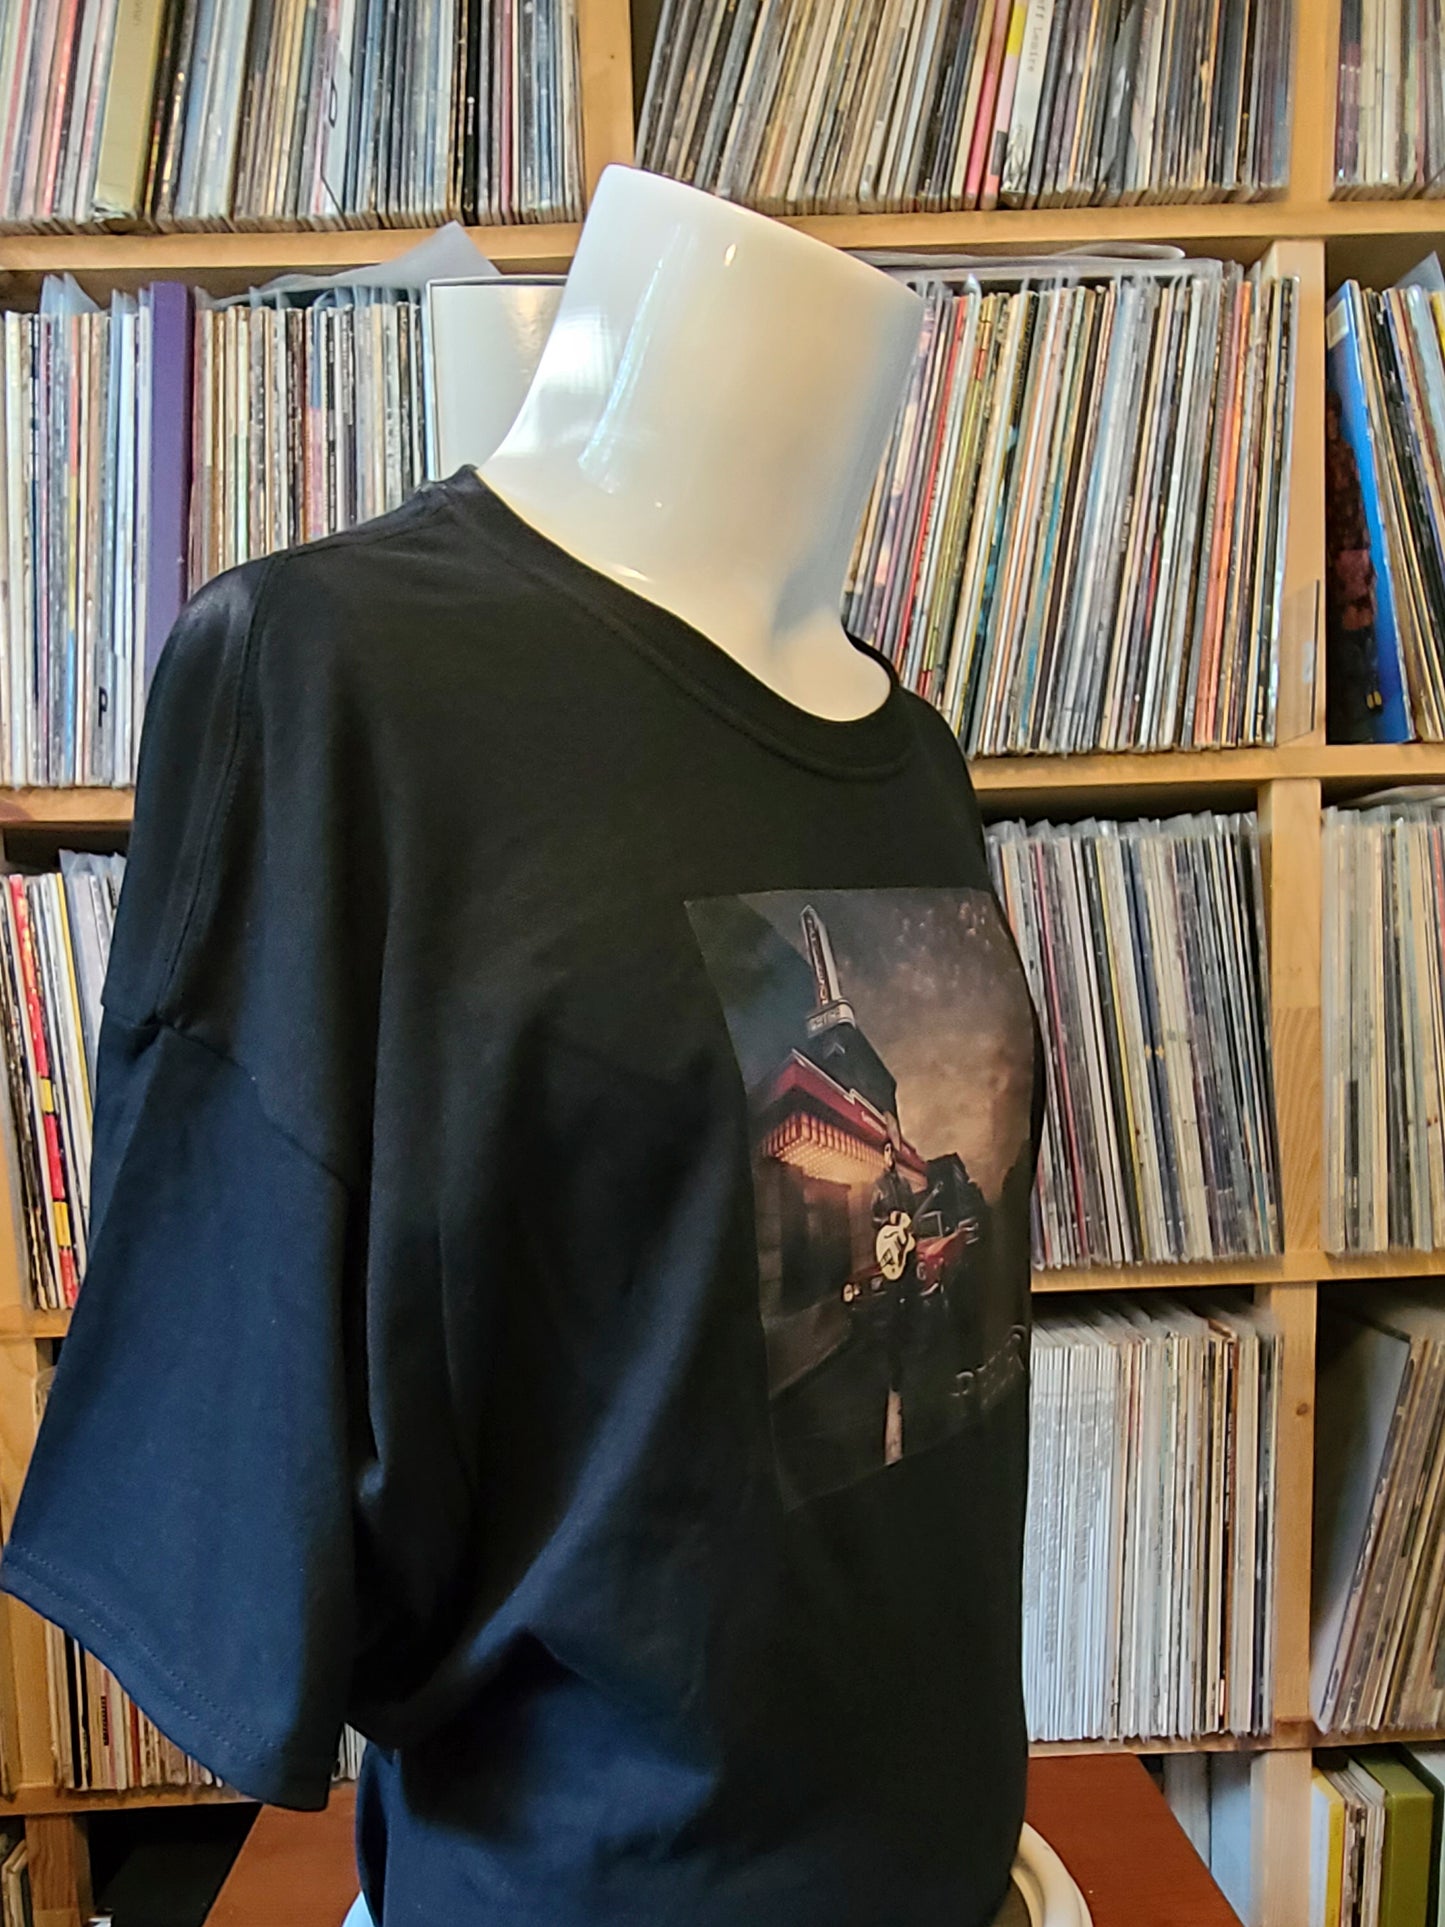 Peeler Album Cover T-Shirt (Colour)